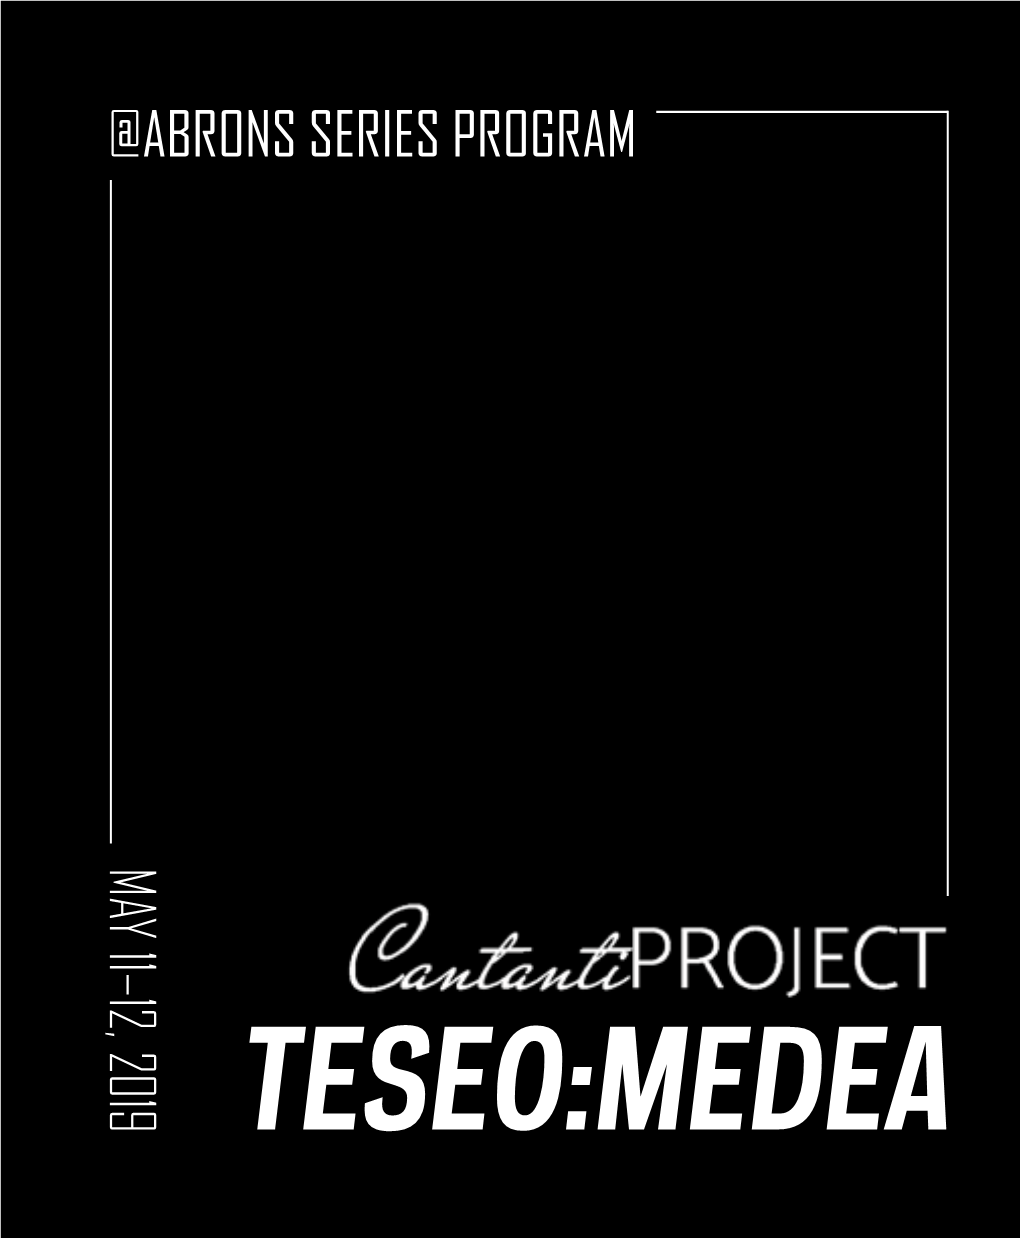 View Program for TESEO:MEDEA